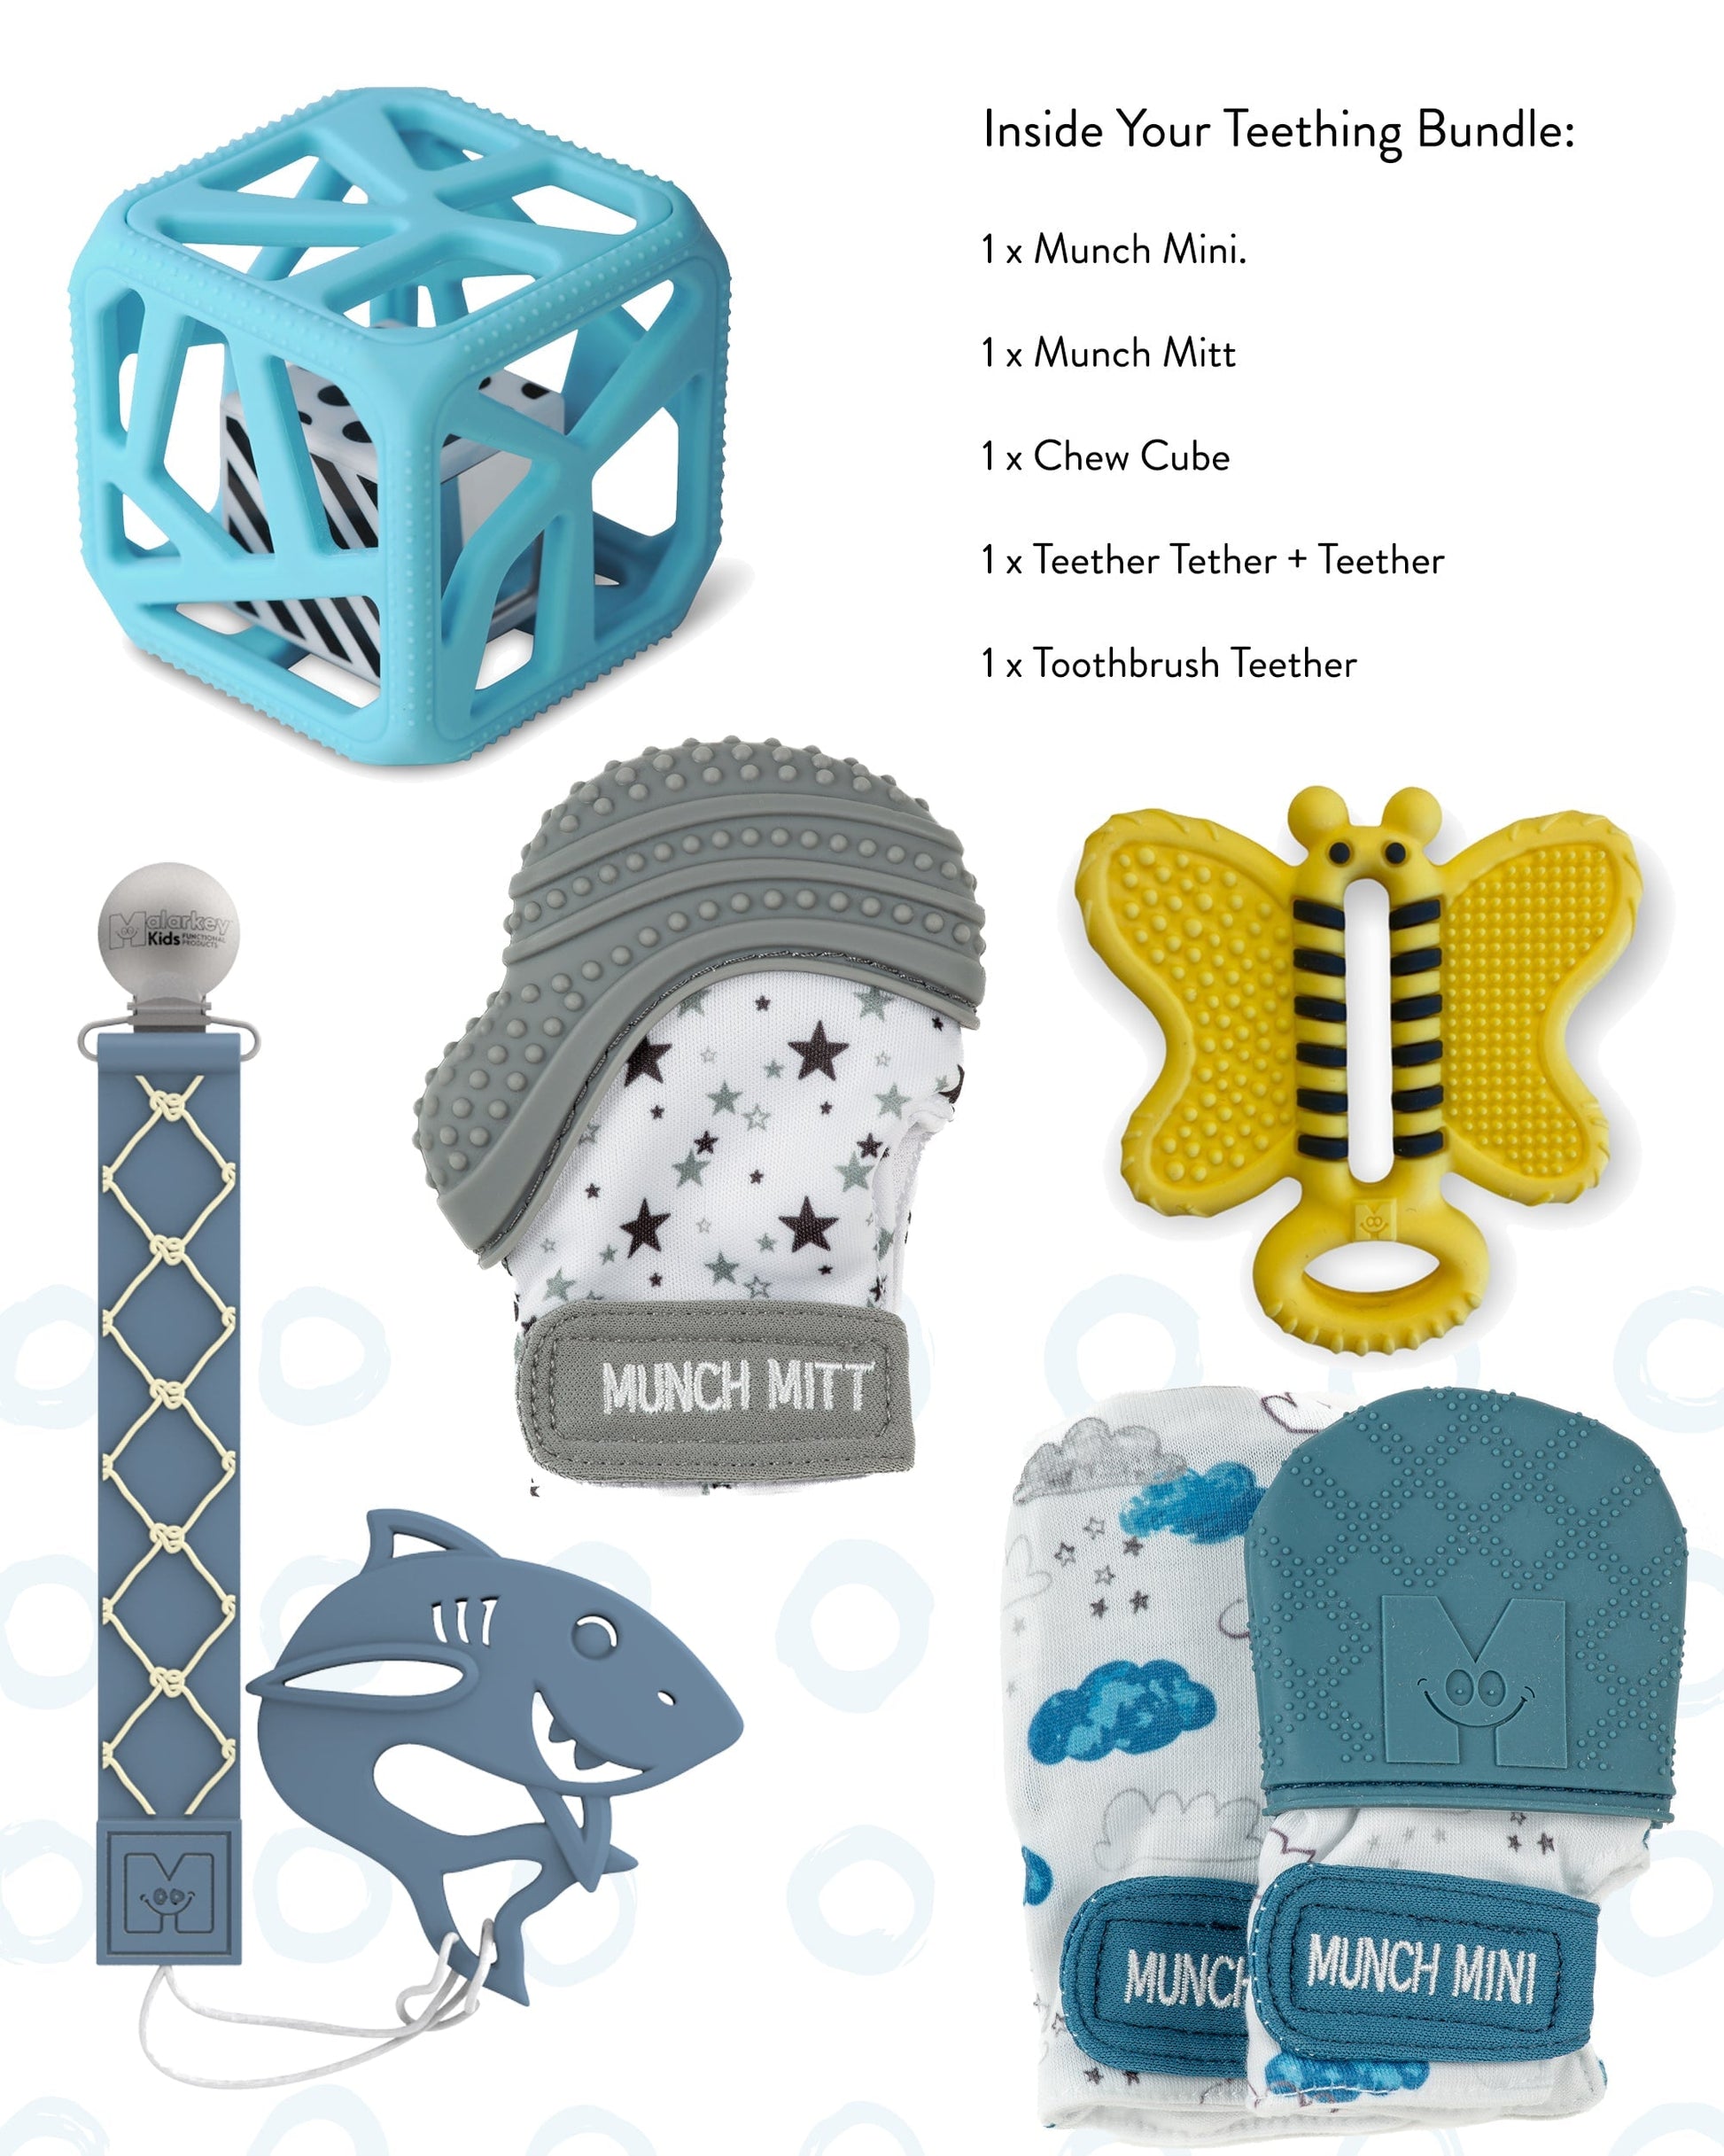 Teething Bundle Gift Pack - No More Blues Baby & Toddler Malarkey Kids CA 